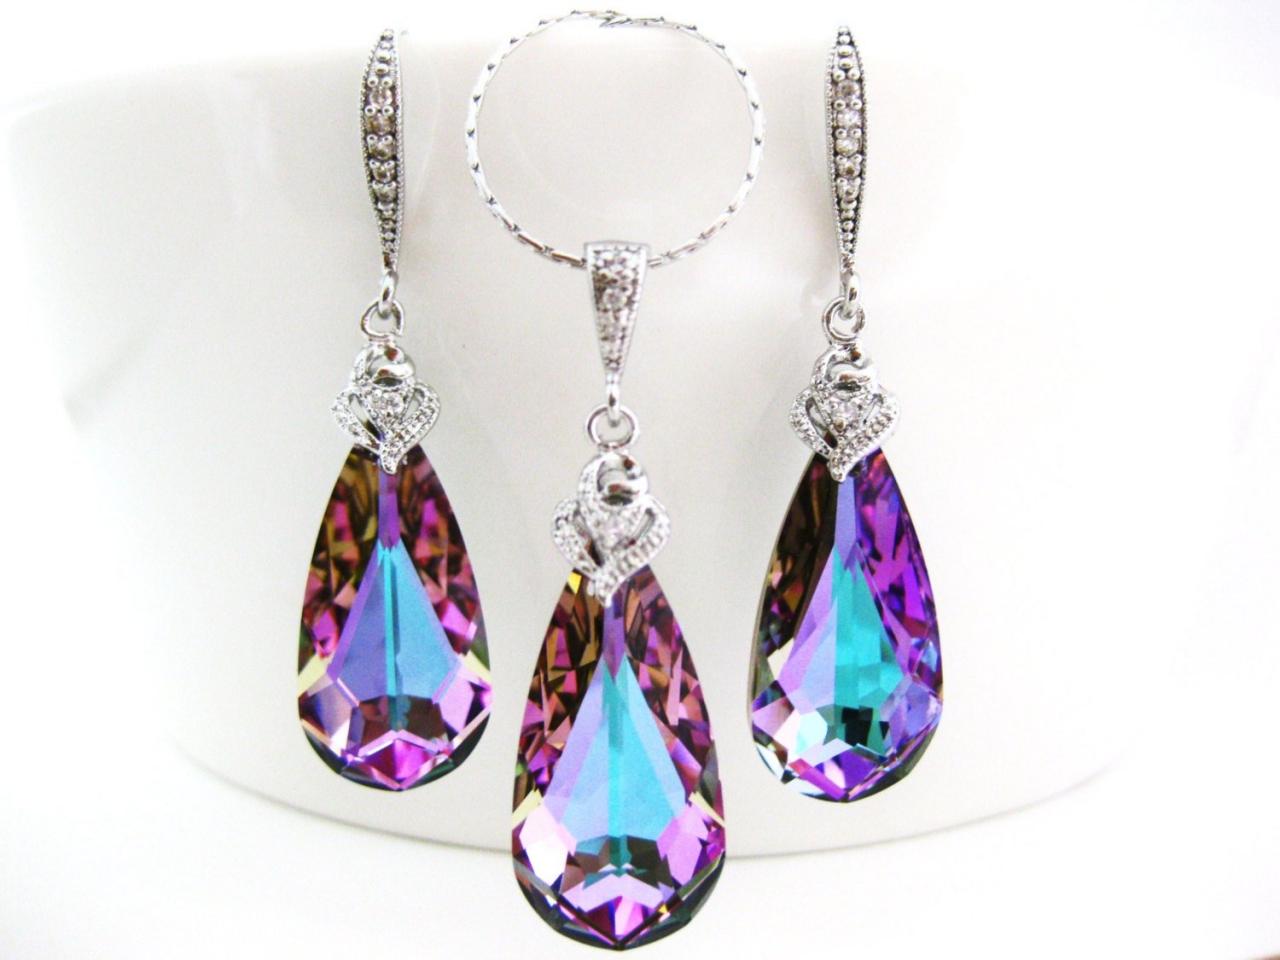 Vitrail Light Swarovski Crystal Teardrop Earrings & Necklace Gift Set Purple Earrings Pink Jewelry Wedding Jewelry Bridal Jewelry (ne007)